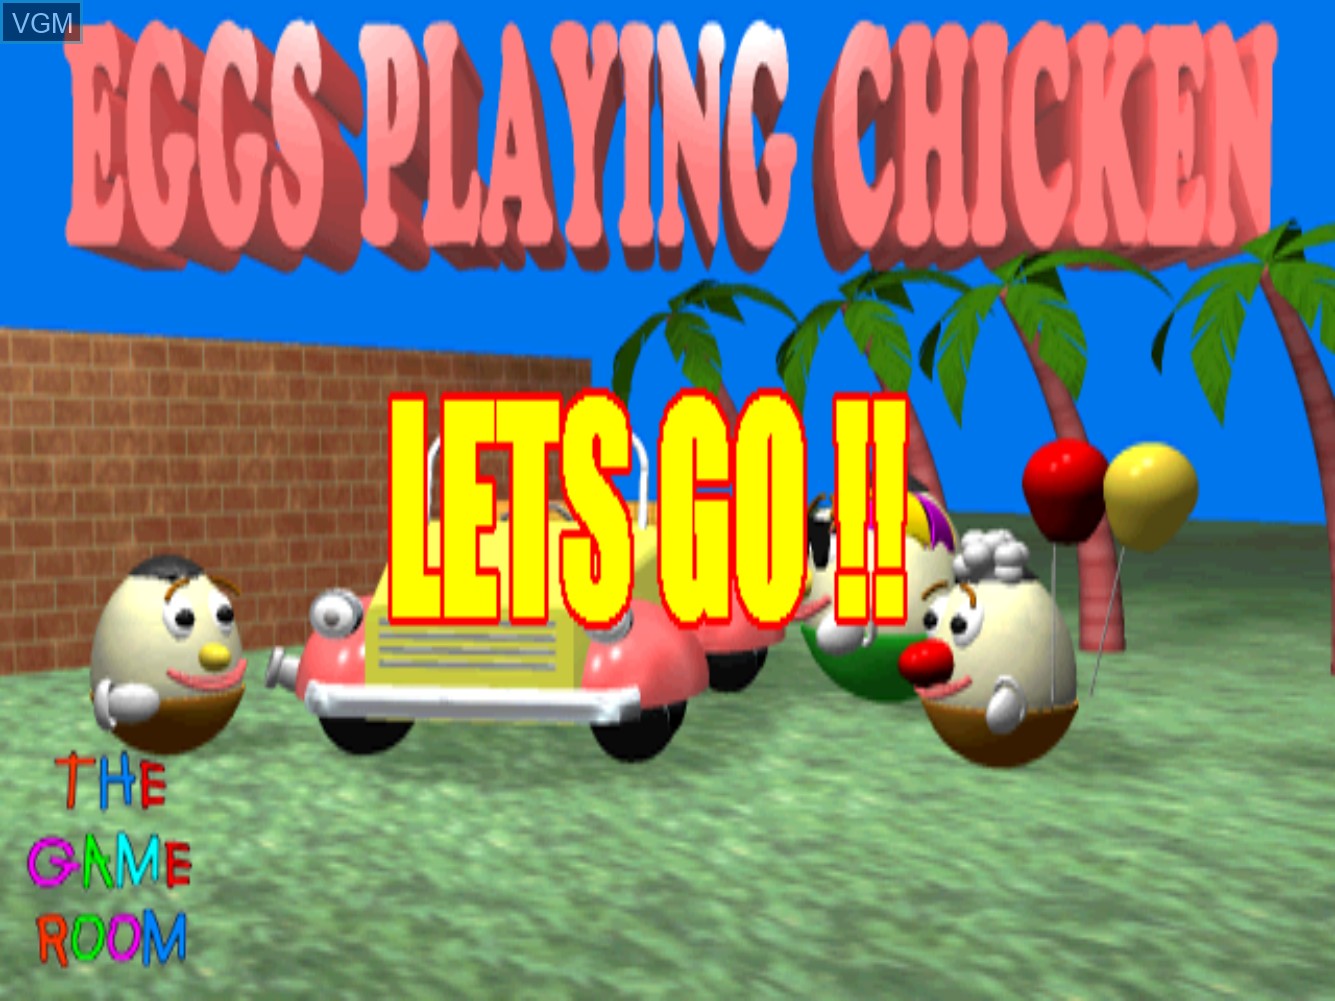 Image du menu du jeu Eggs Playing Chicken sur MAME